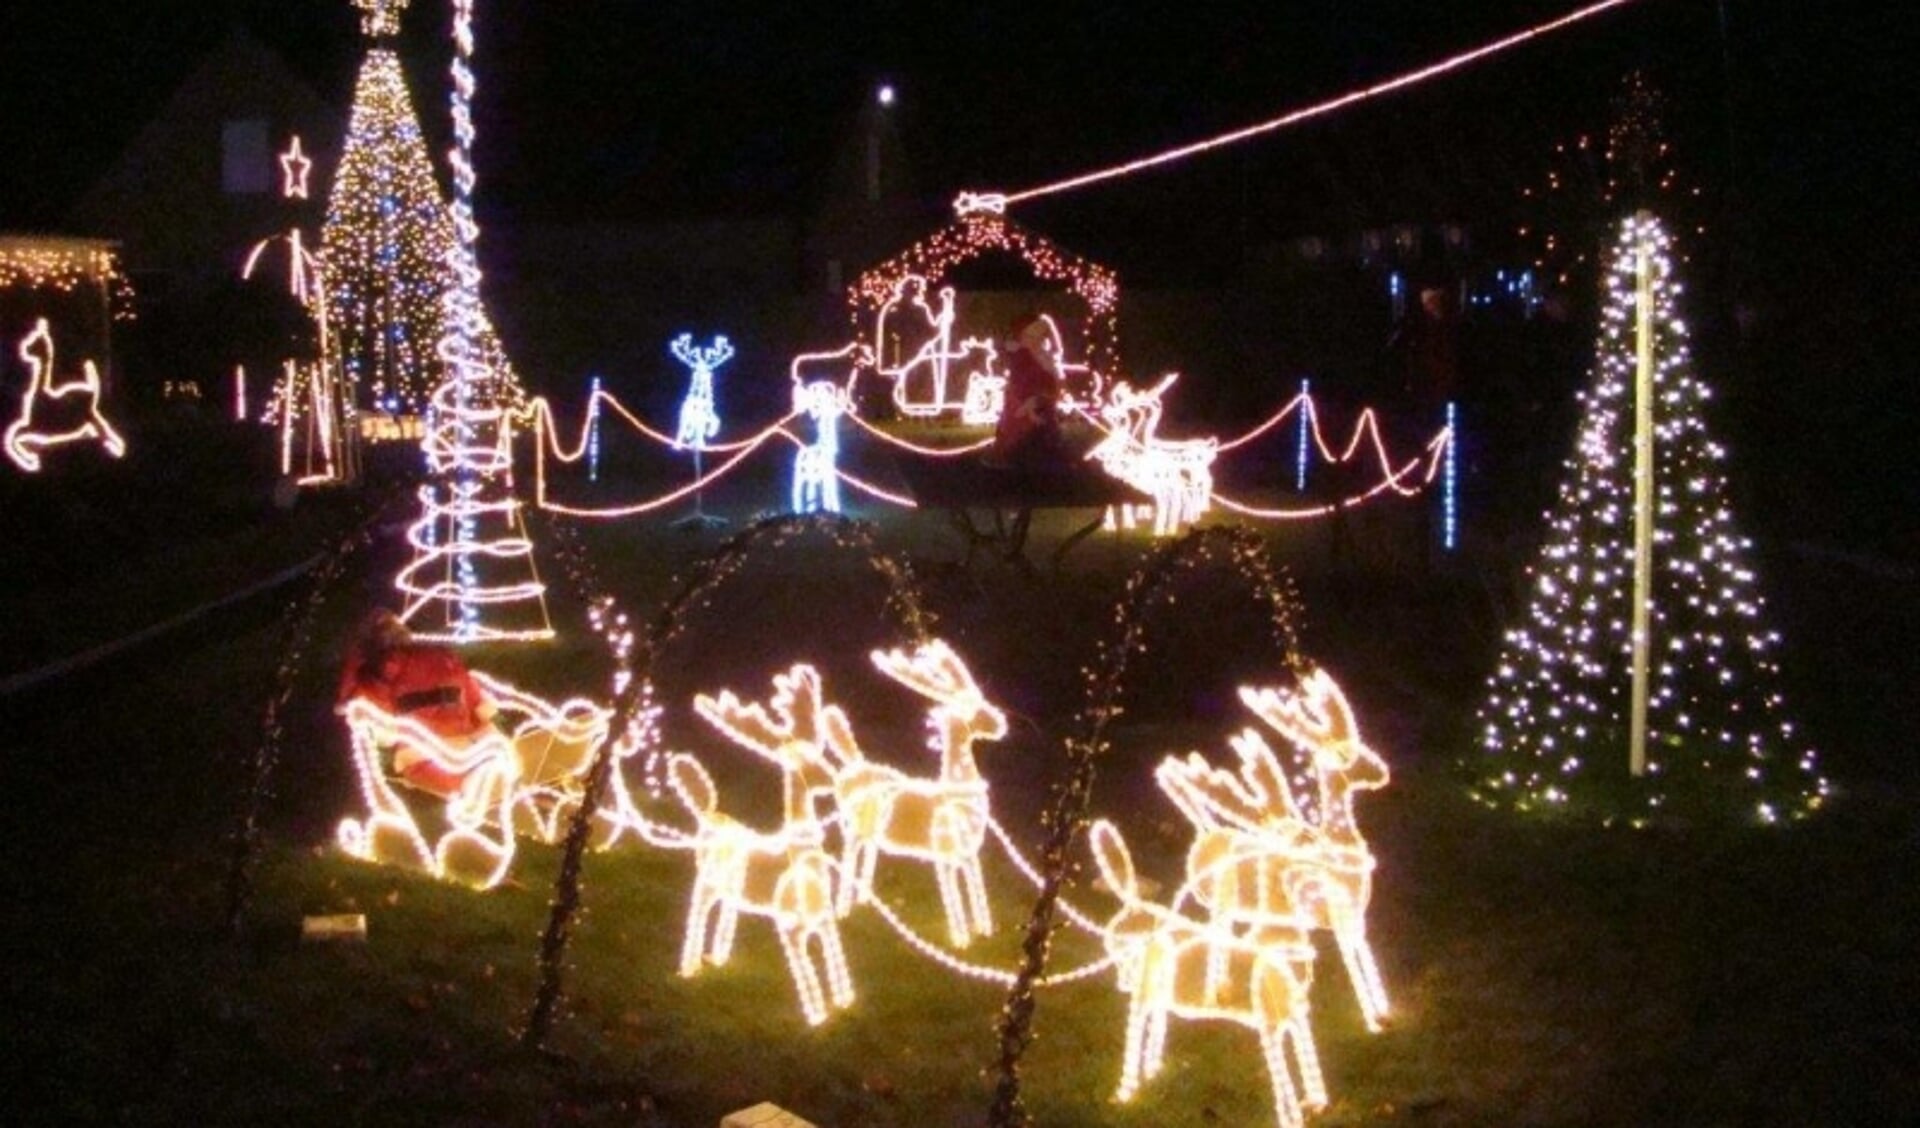 Een kersttuin brengt licht en sfeer tijdens de donkere dagen. Foto: PR